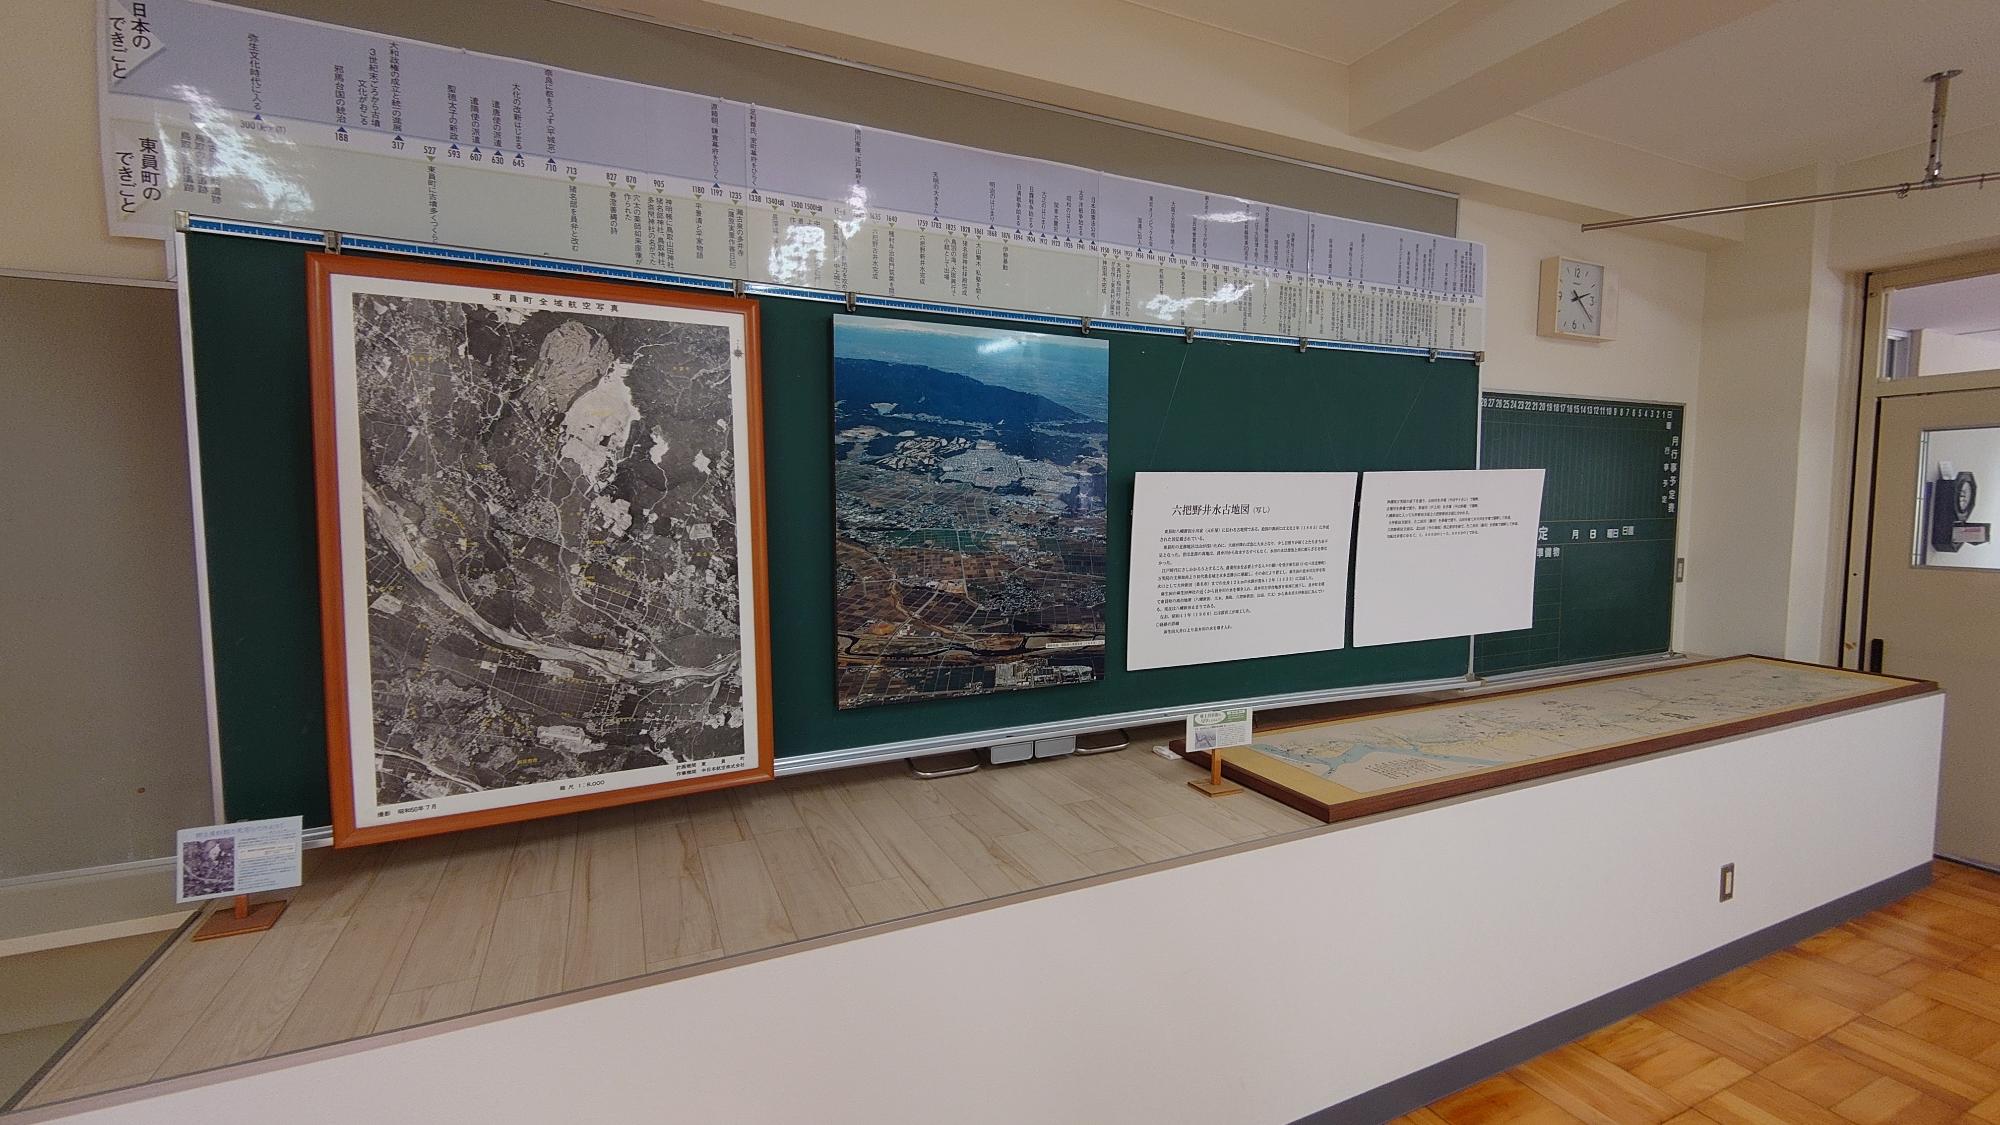 年表や写真を掲示している元教室を利用した東員町郷土資料館内部の写真